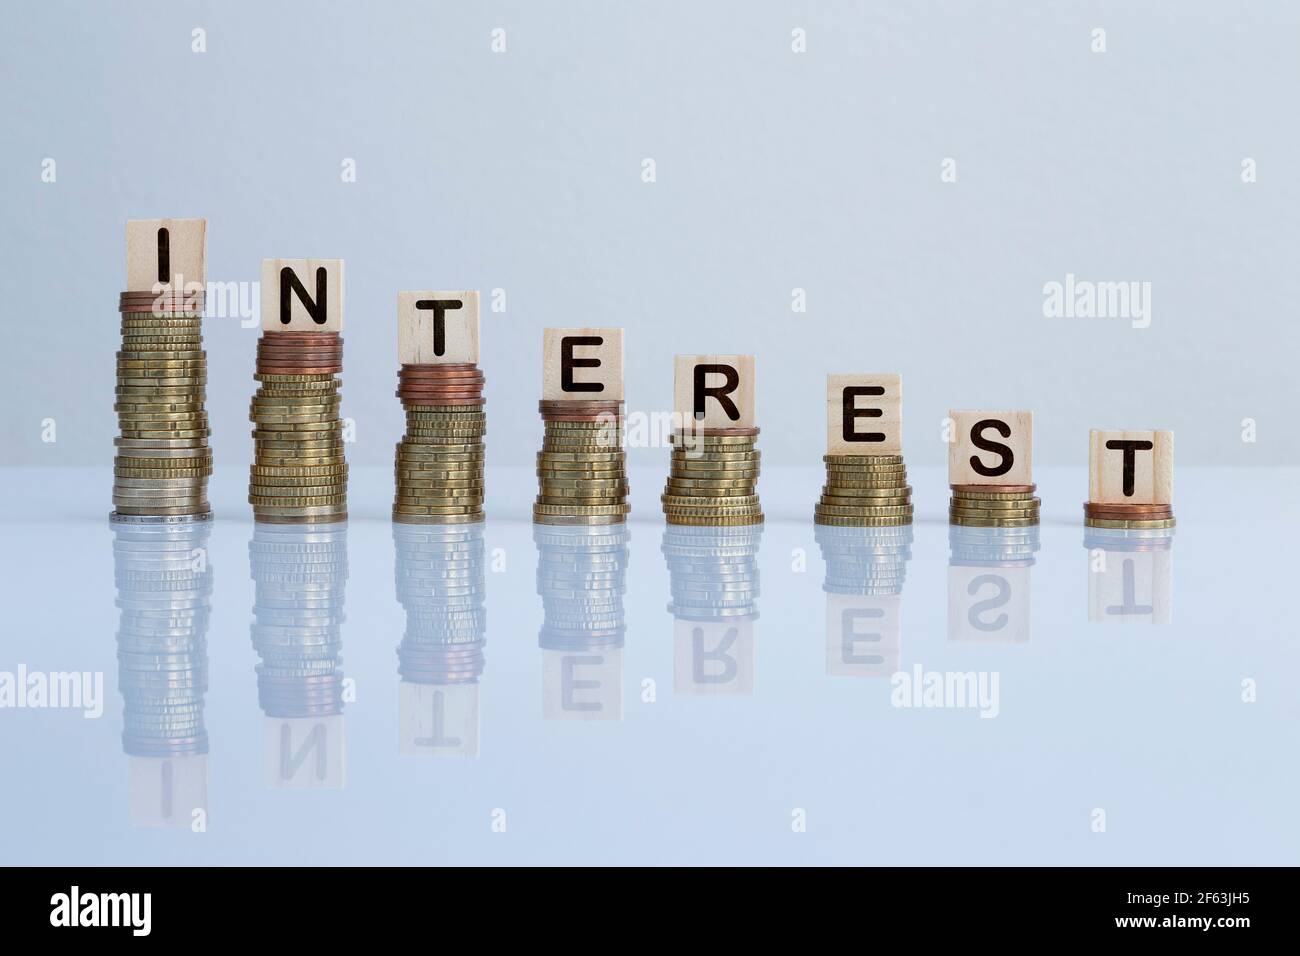 Parola 'INTERESSE' su blocchi di legno in cima a pile discendenti di monete su sfondo grigio. Foto concettuale di economia, affari, finanza e banche Foto Stock